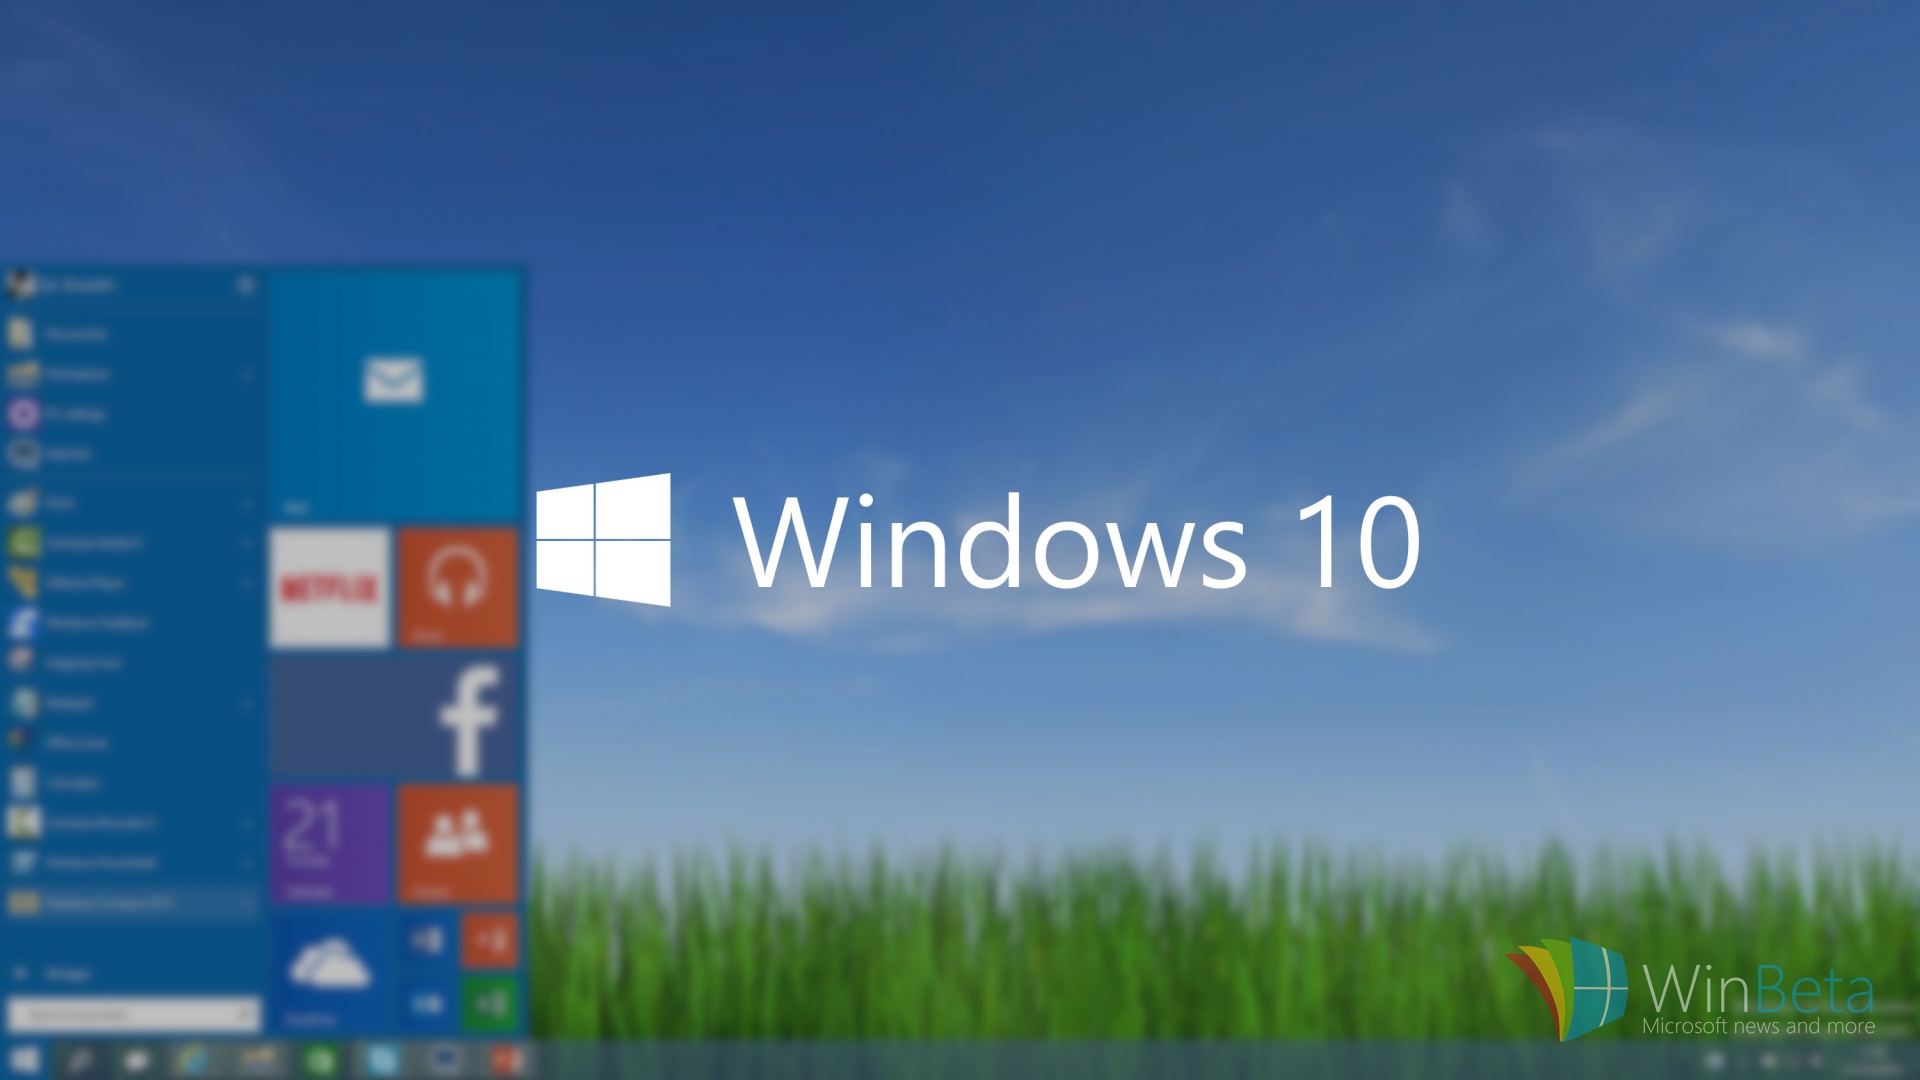 Windows 10 Beğenmediysem Geri Dönüş Olur mu?